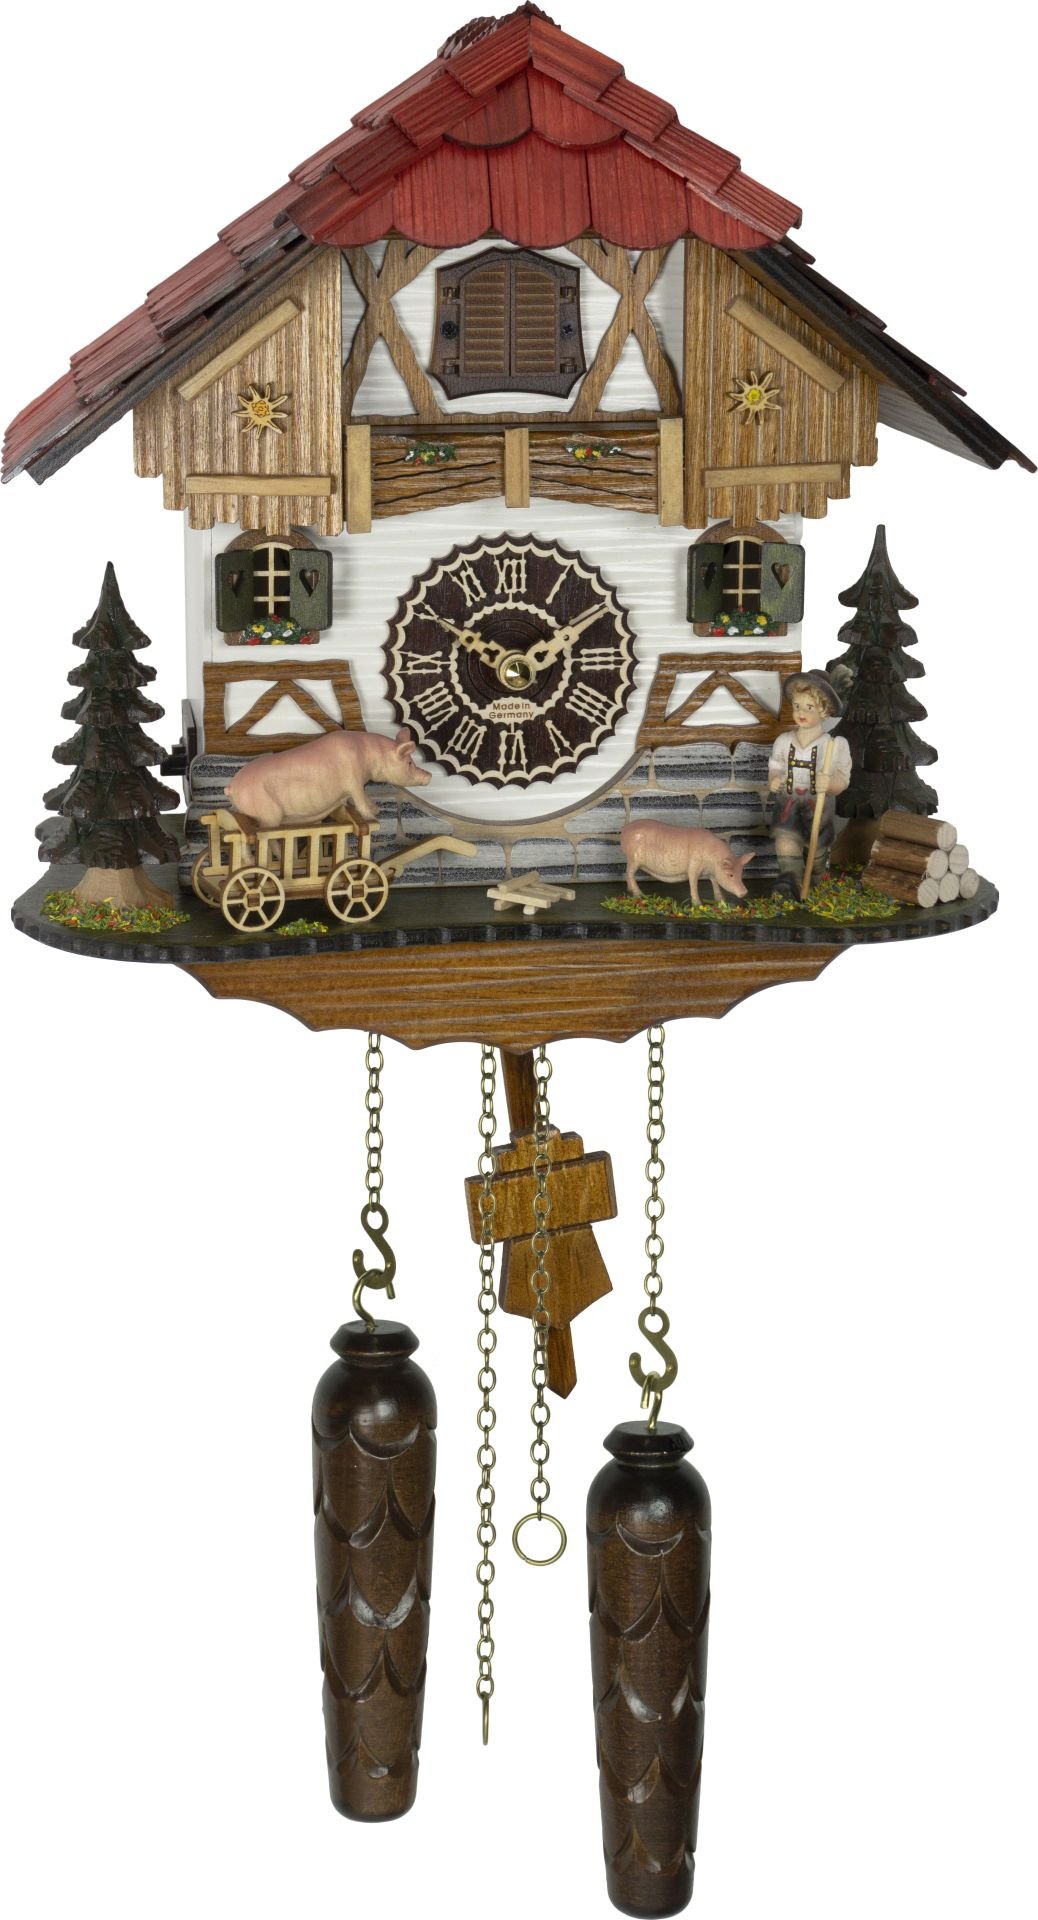 Kuckucksuhr Chalet-Stil Quarz-Uhrwerk 28cm von Trenkle Uhren